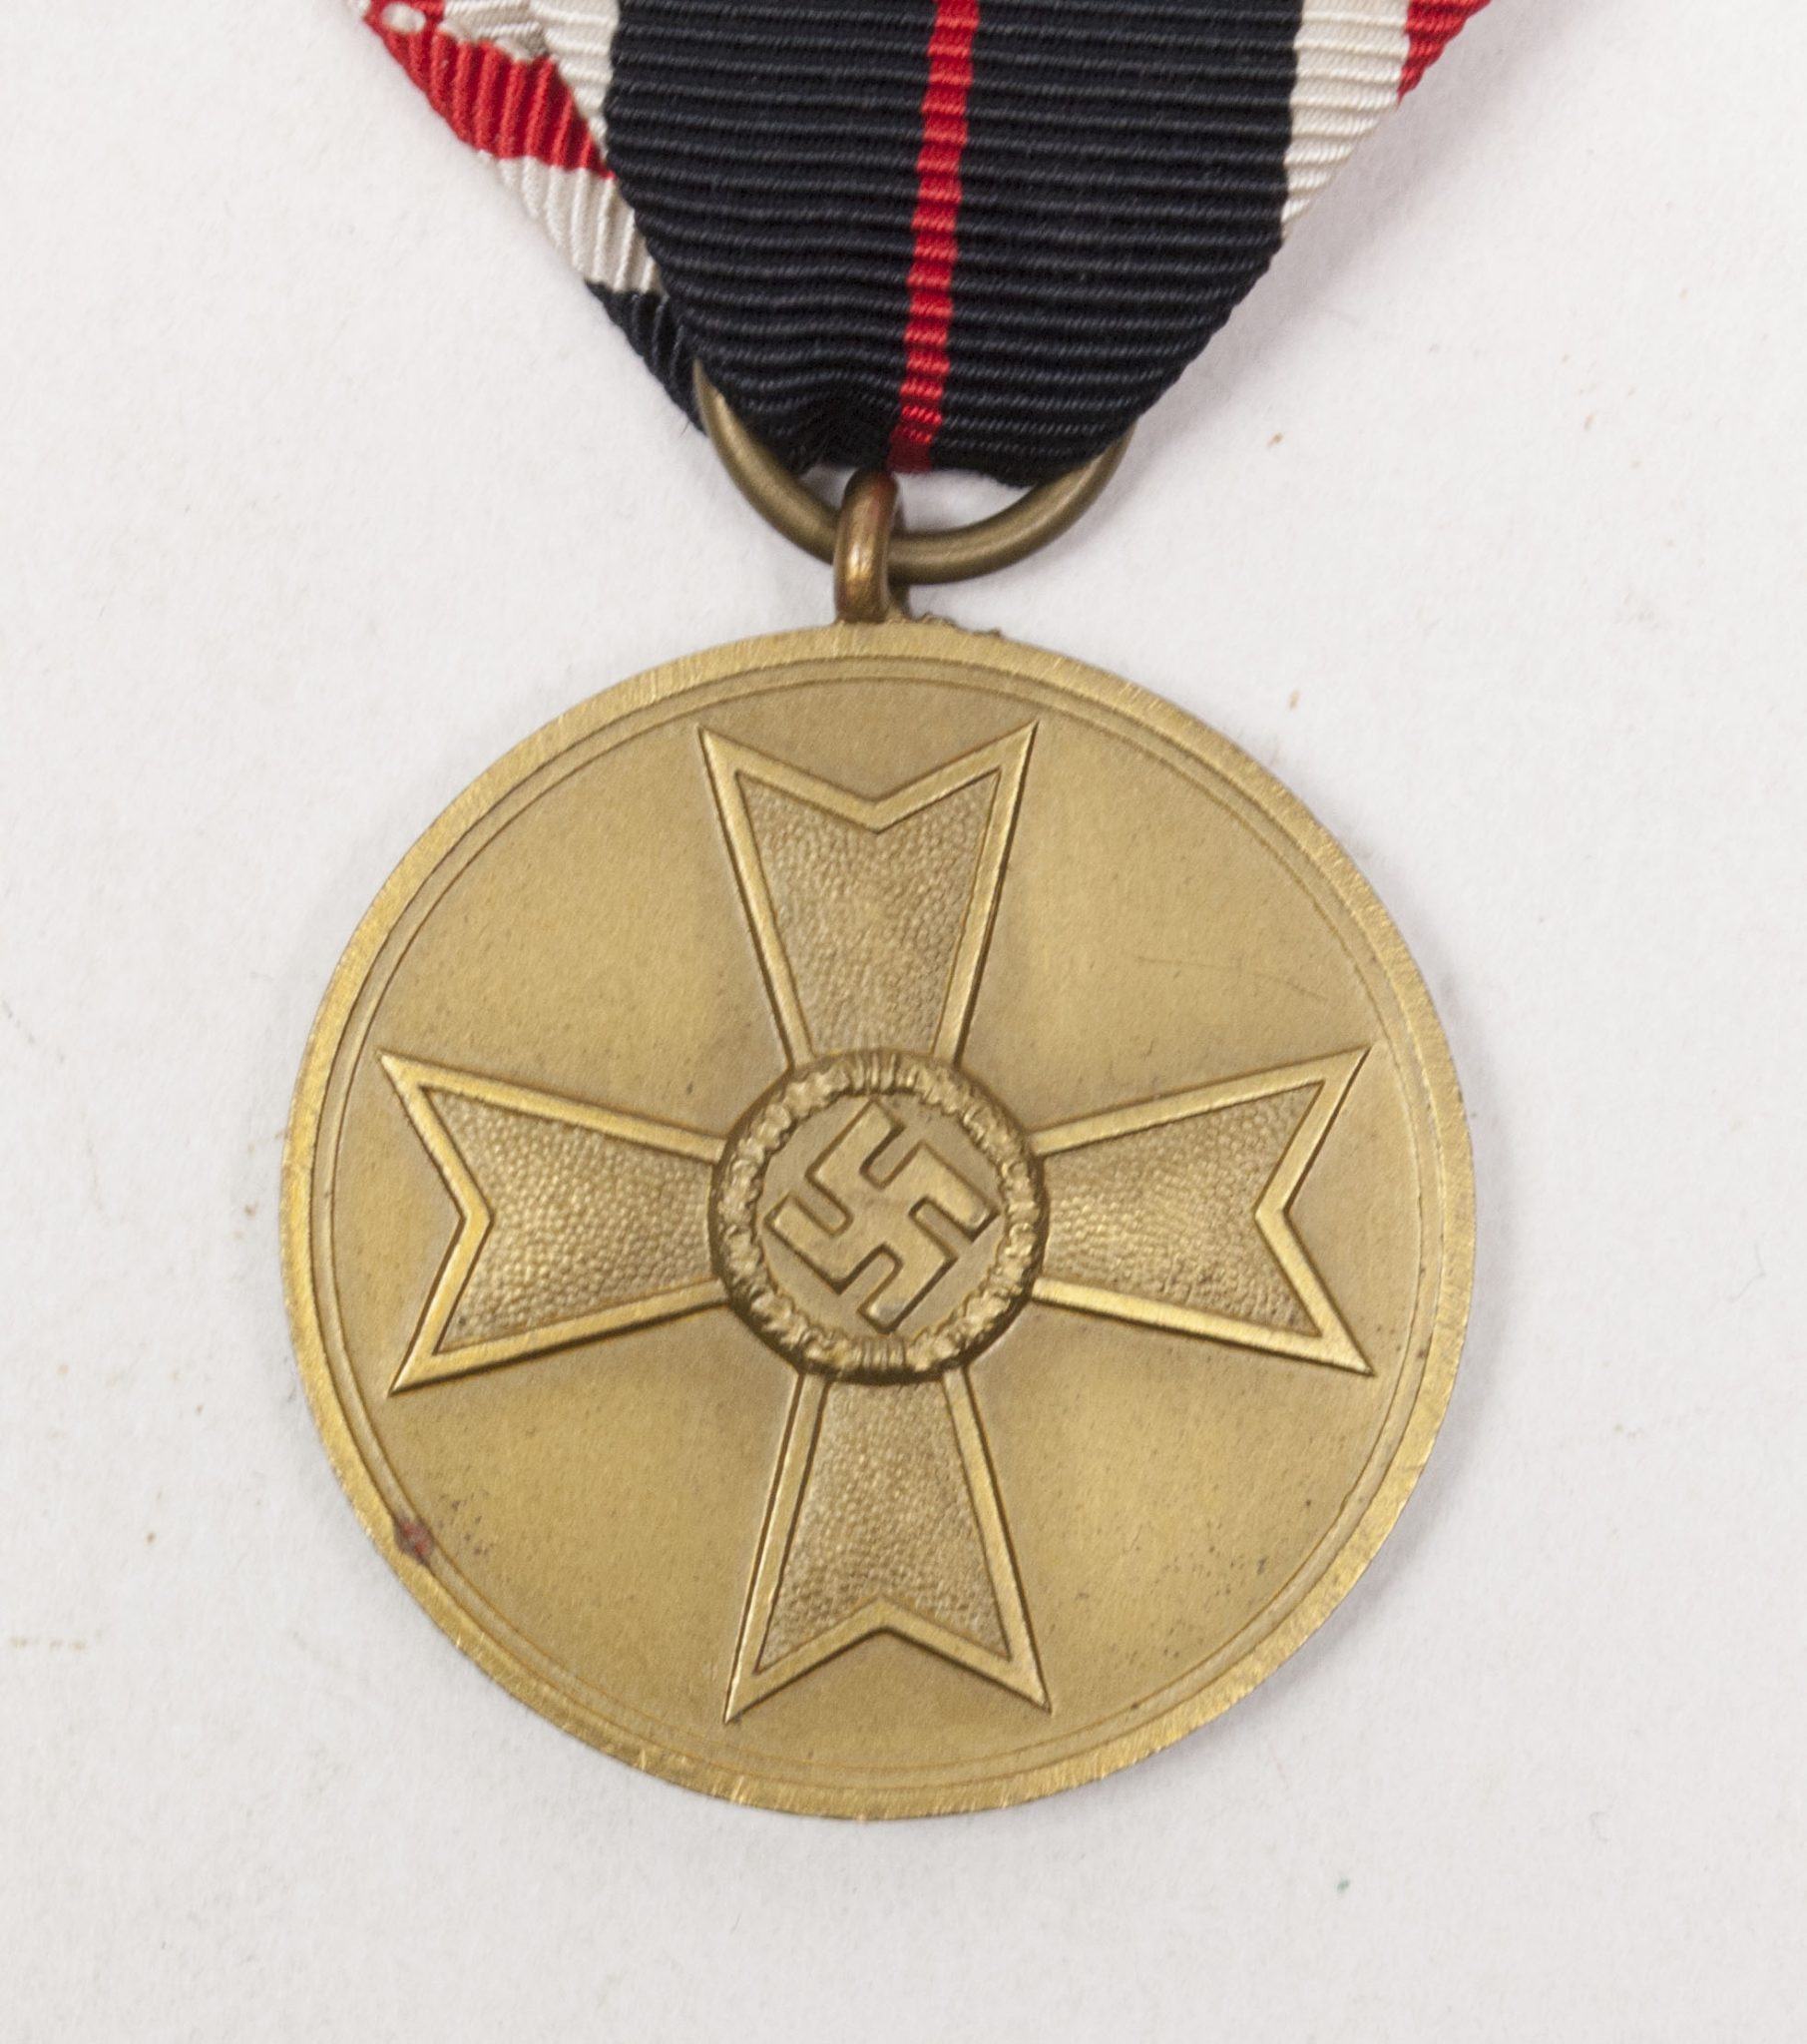 Kriegsverdienstmedaille (KVKm) War Merit Medal on long ribbon